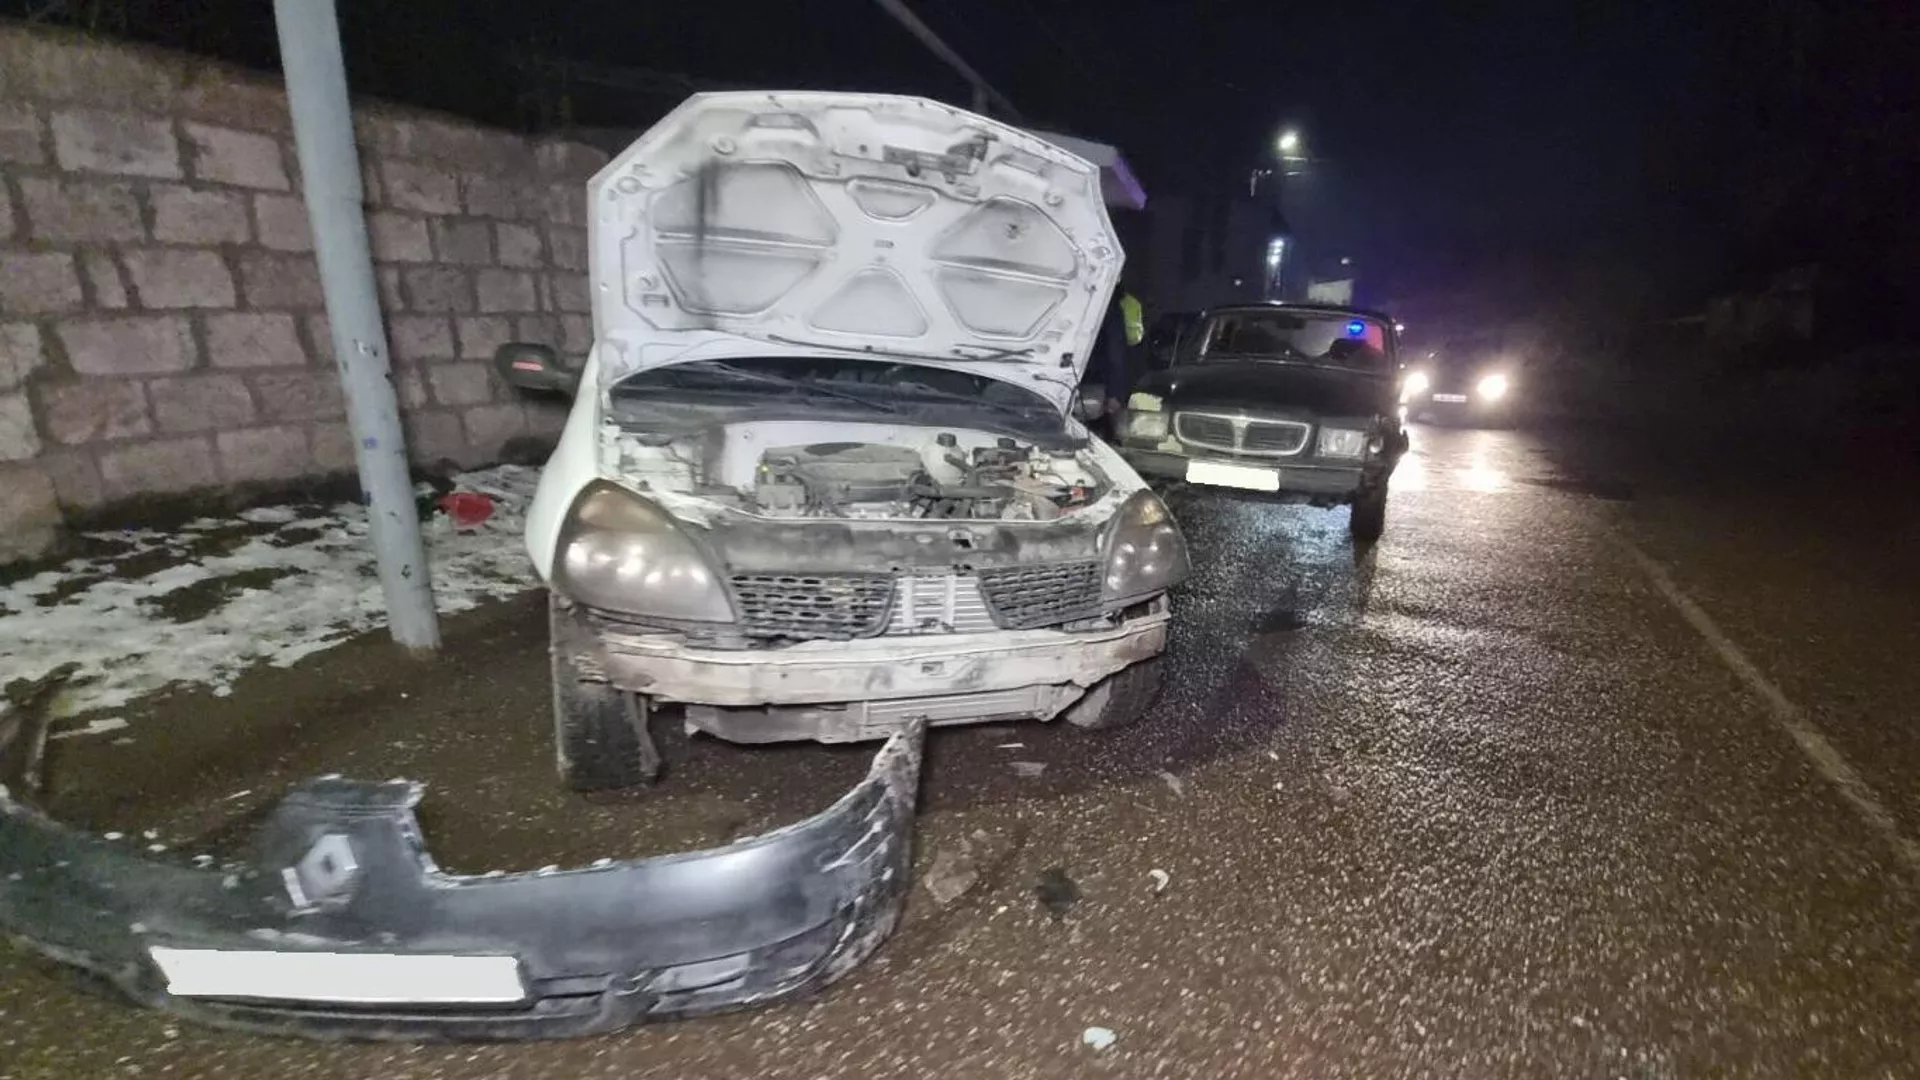 Երևանում ավտոմեքենան բախվել է գազատար խողովակին. առկա է գազի արտահոսք